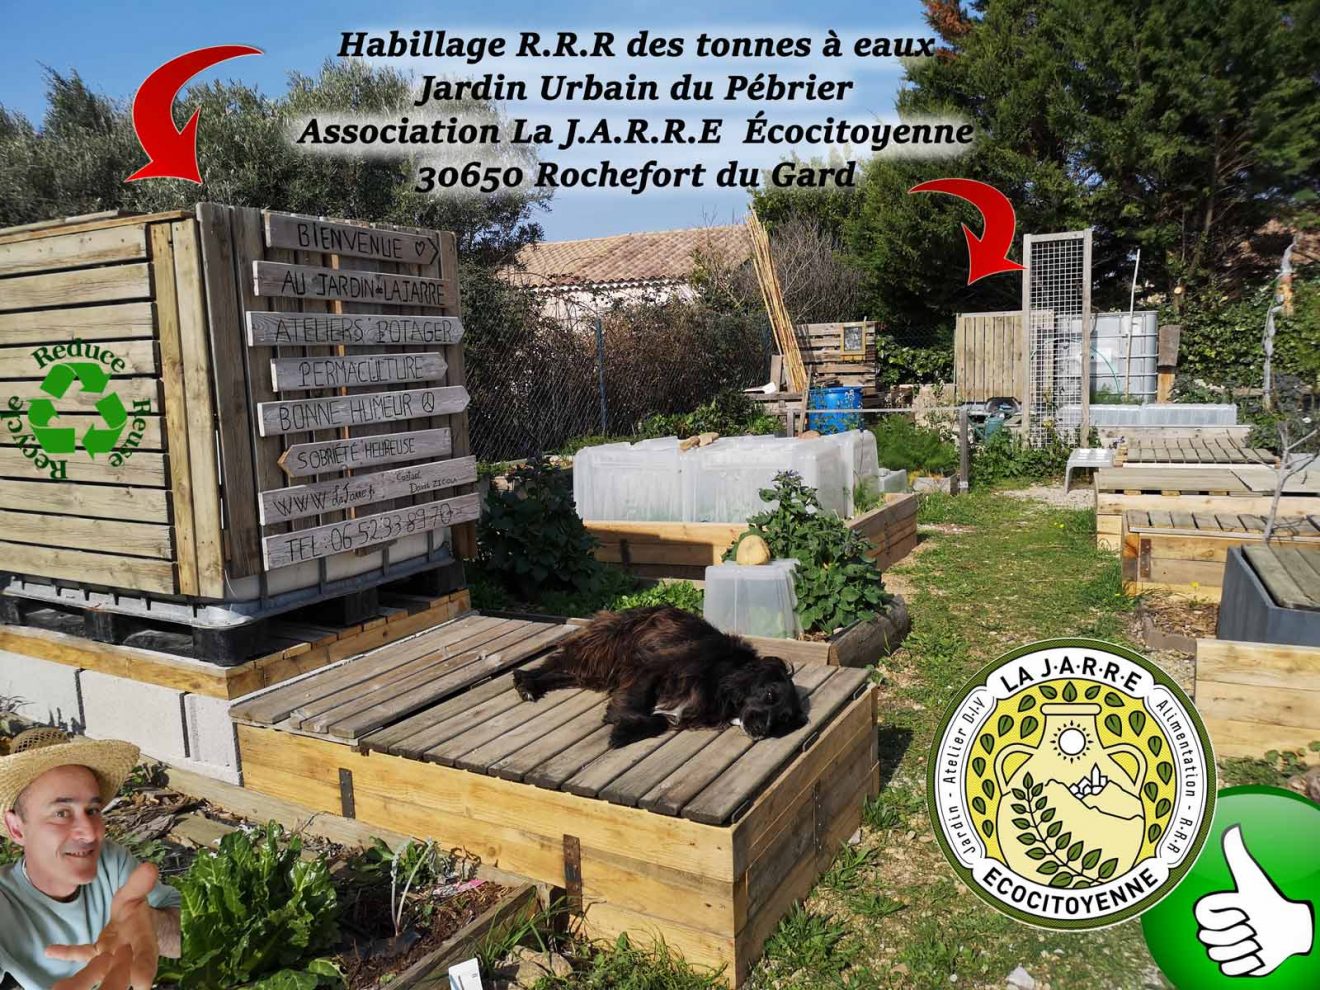 Habillage-des-2-cuves-à-eaux-jardin-urbain-Pébrier-Association-la-jarre-30650-rochefort-du-Gard